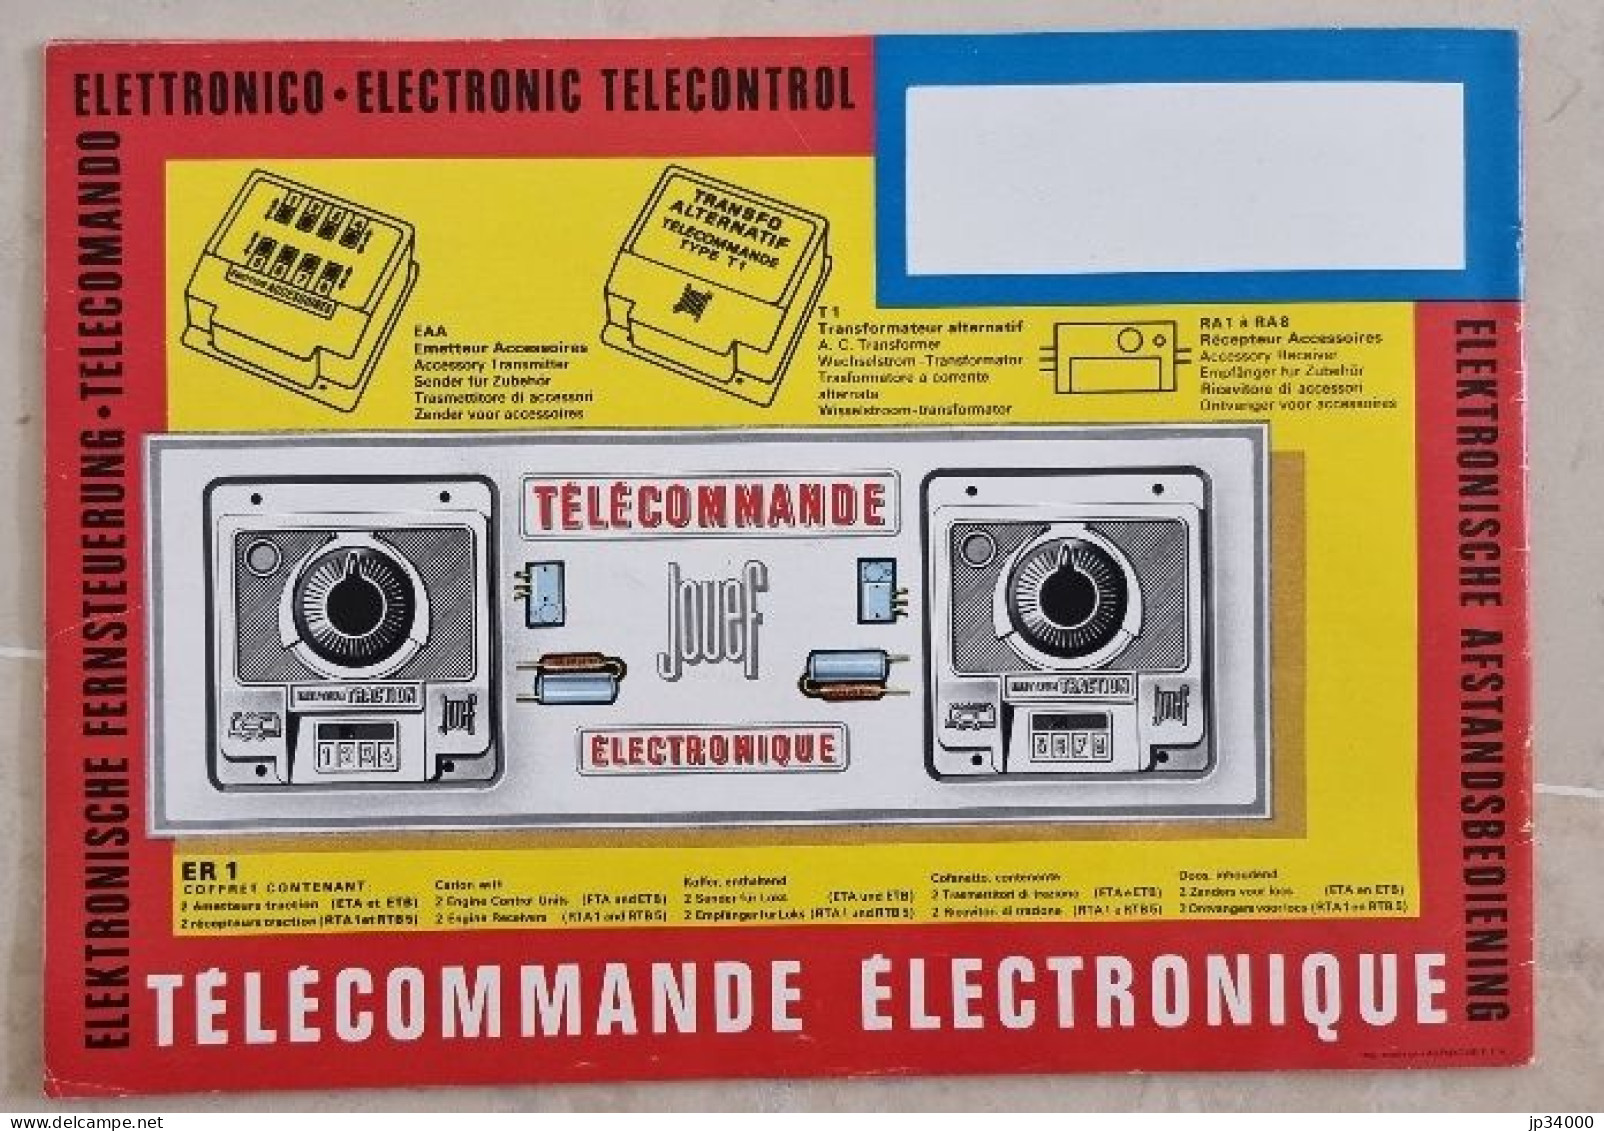 TELECOMMANDE ELECTRONIQUE (Jouef HO) Complet 32 Pages, 1968-69 (Trains Electriques) - Literatuur & DVD